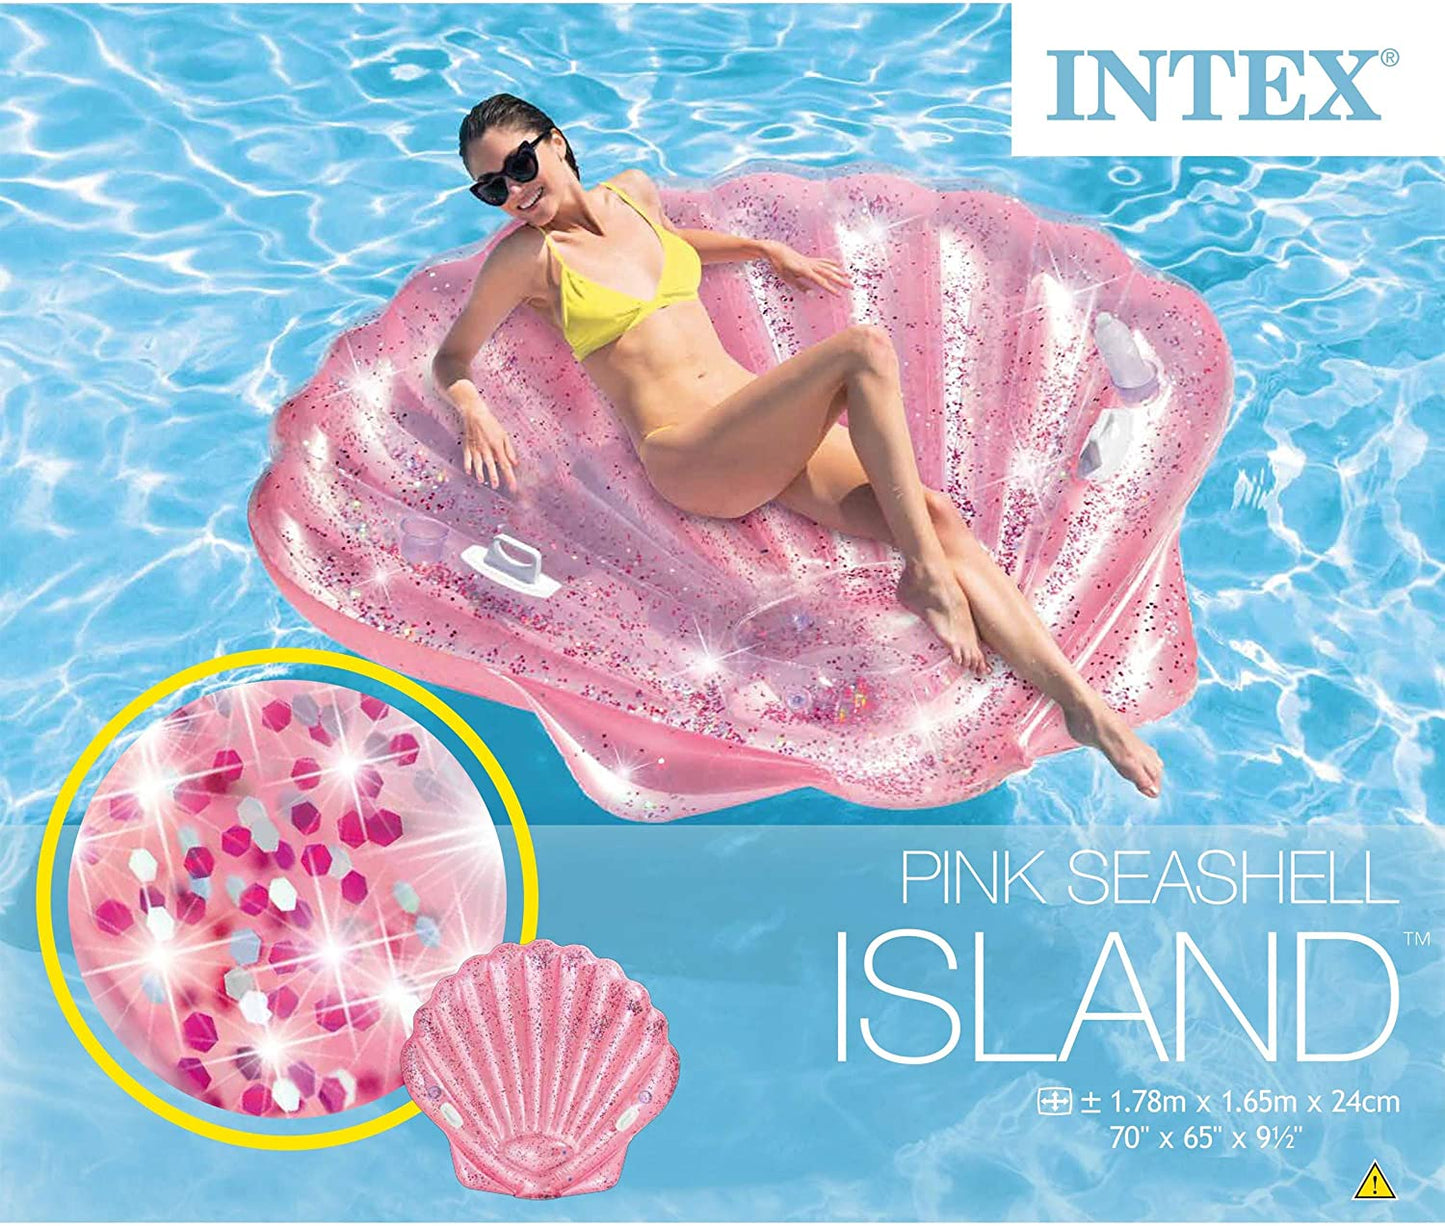 Shimmering Seashell Island - INTEX